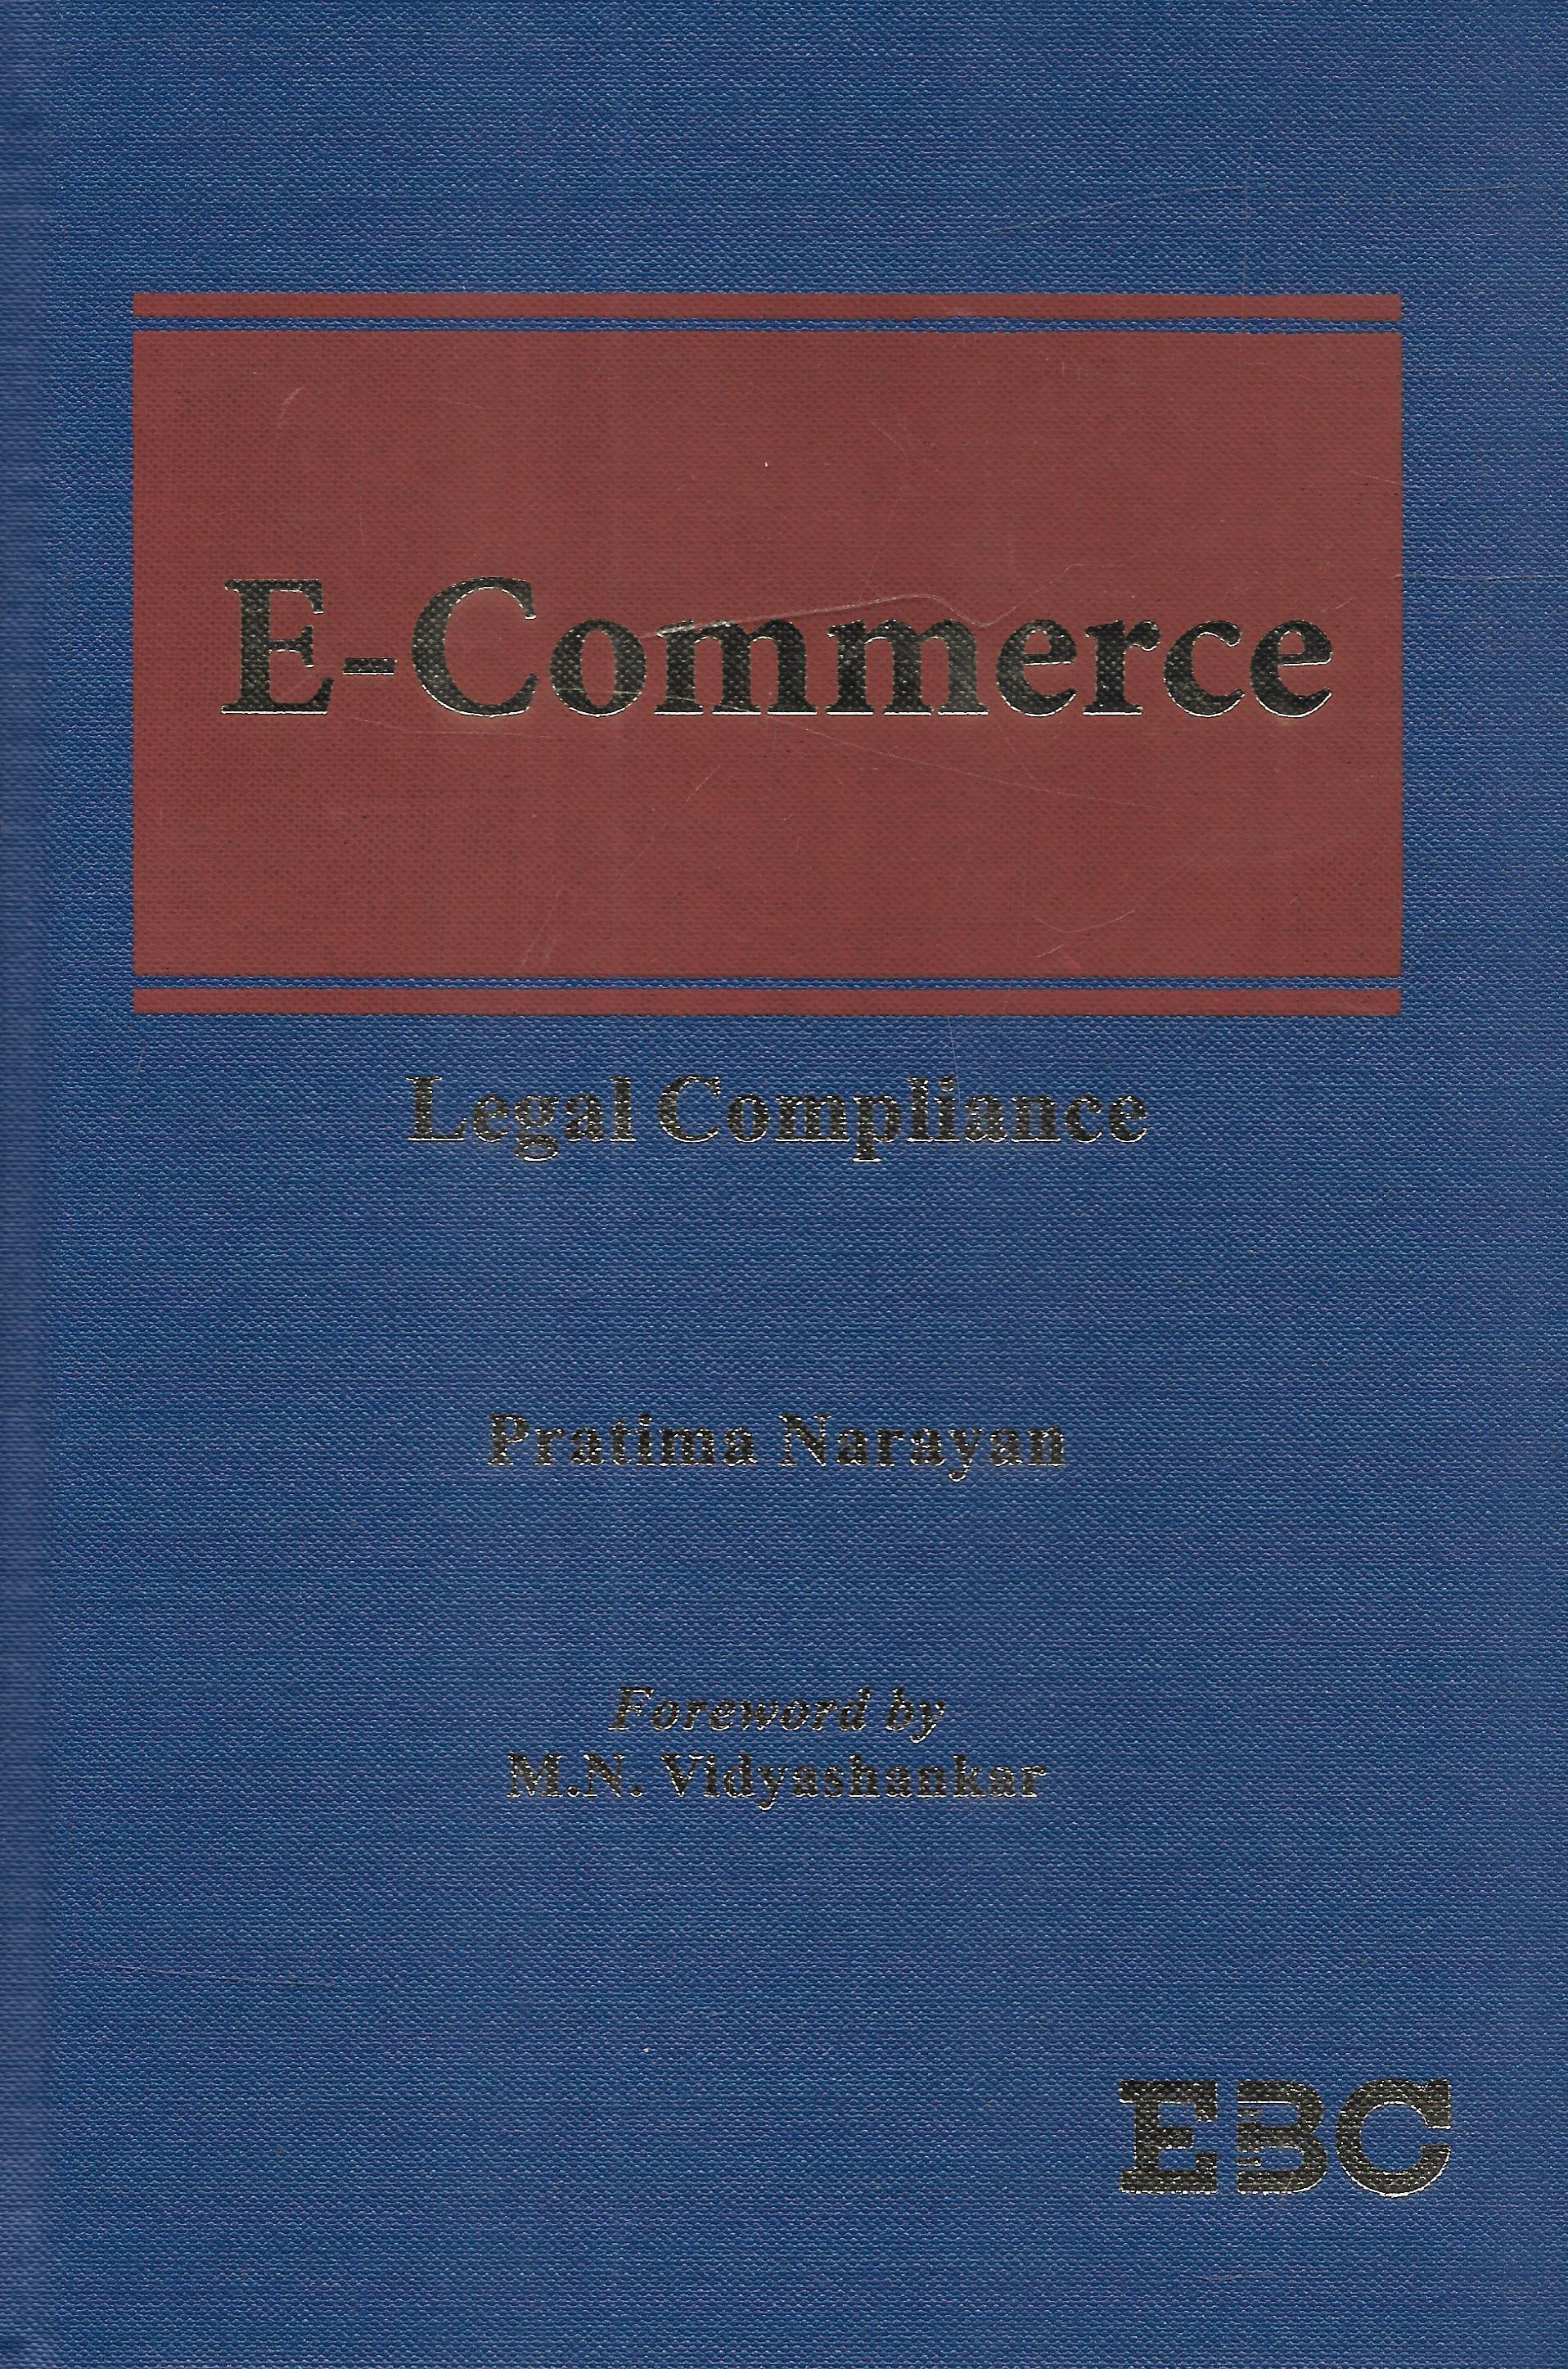 E-Commerce Legal Compliance - M&J Services